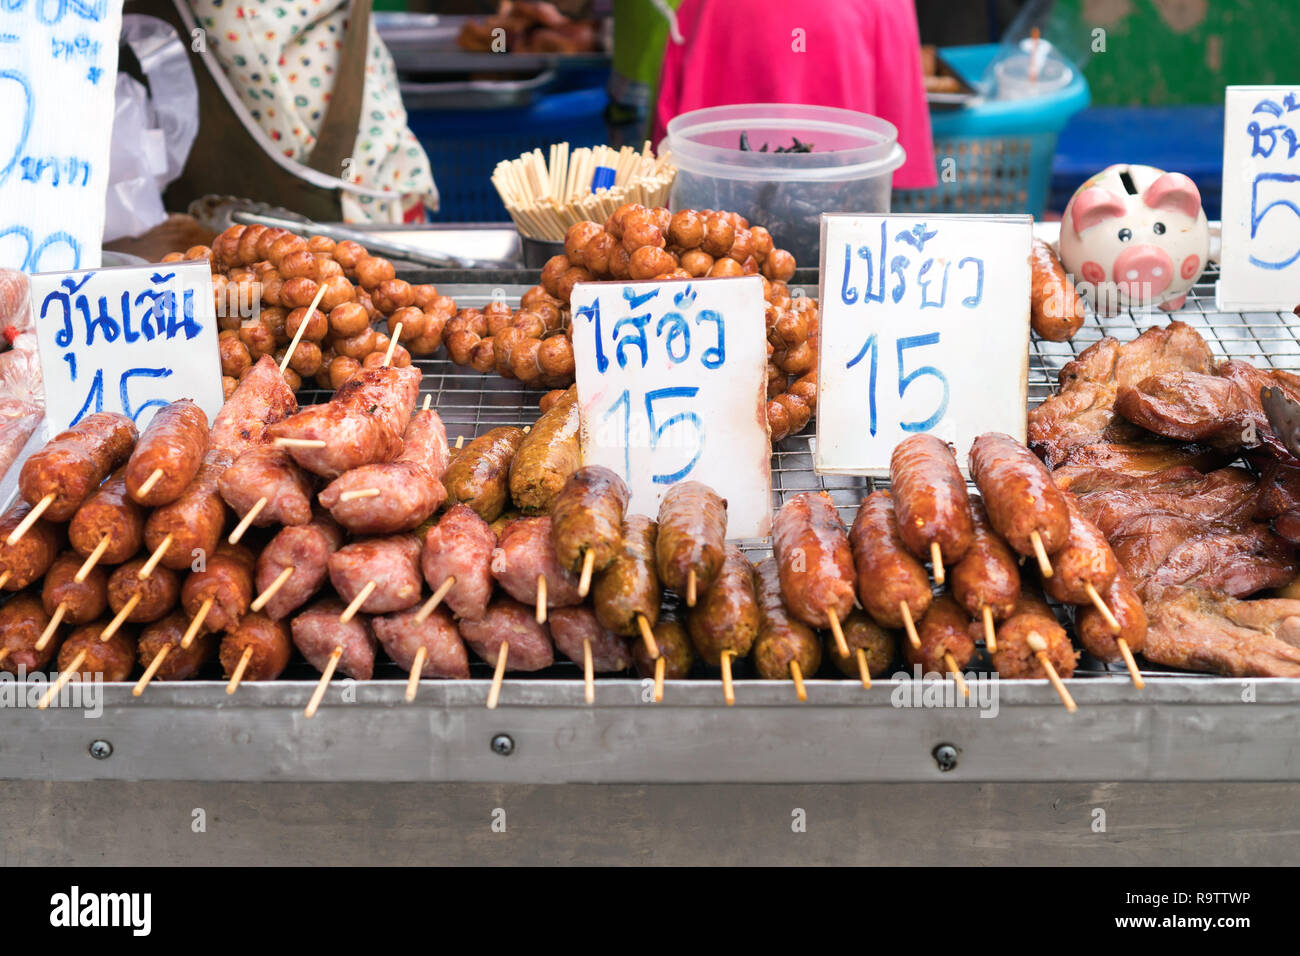 Cucina di strada in Phuket, Tailandia - carni fritte con bastoni, stile tailandese cibo Foto Stock